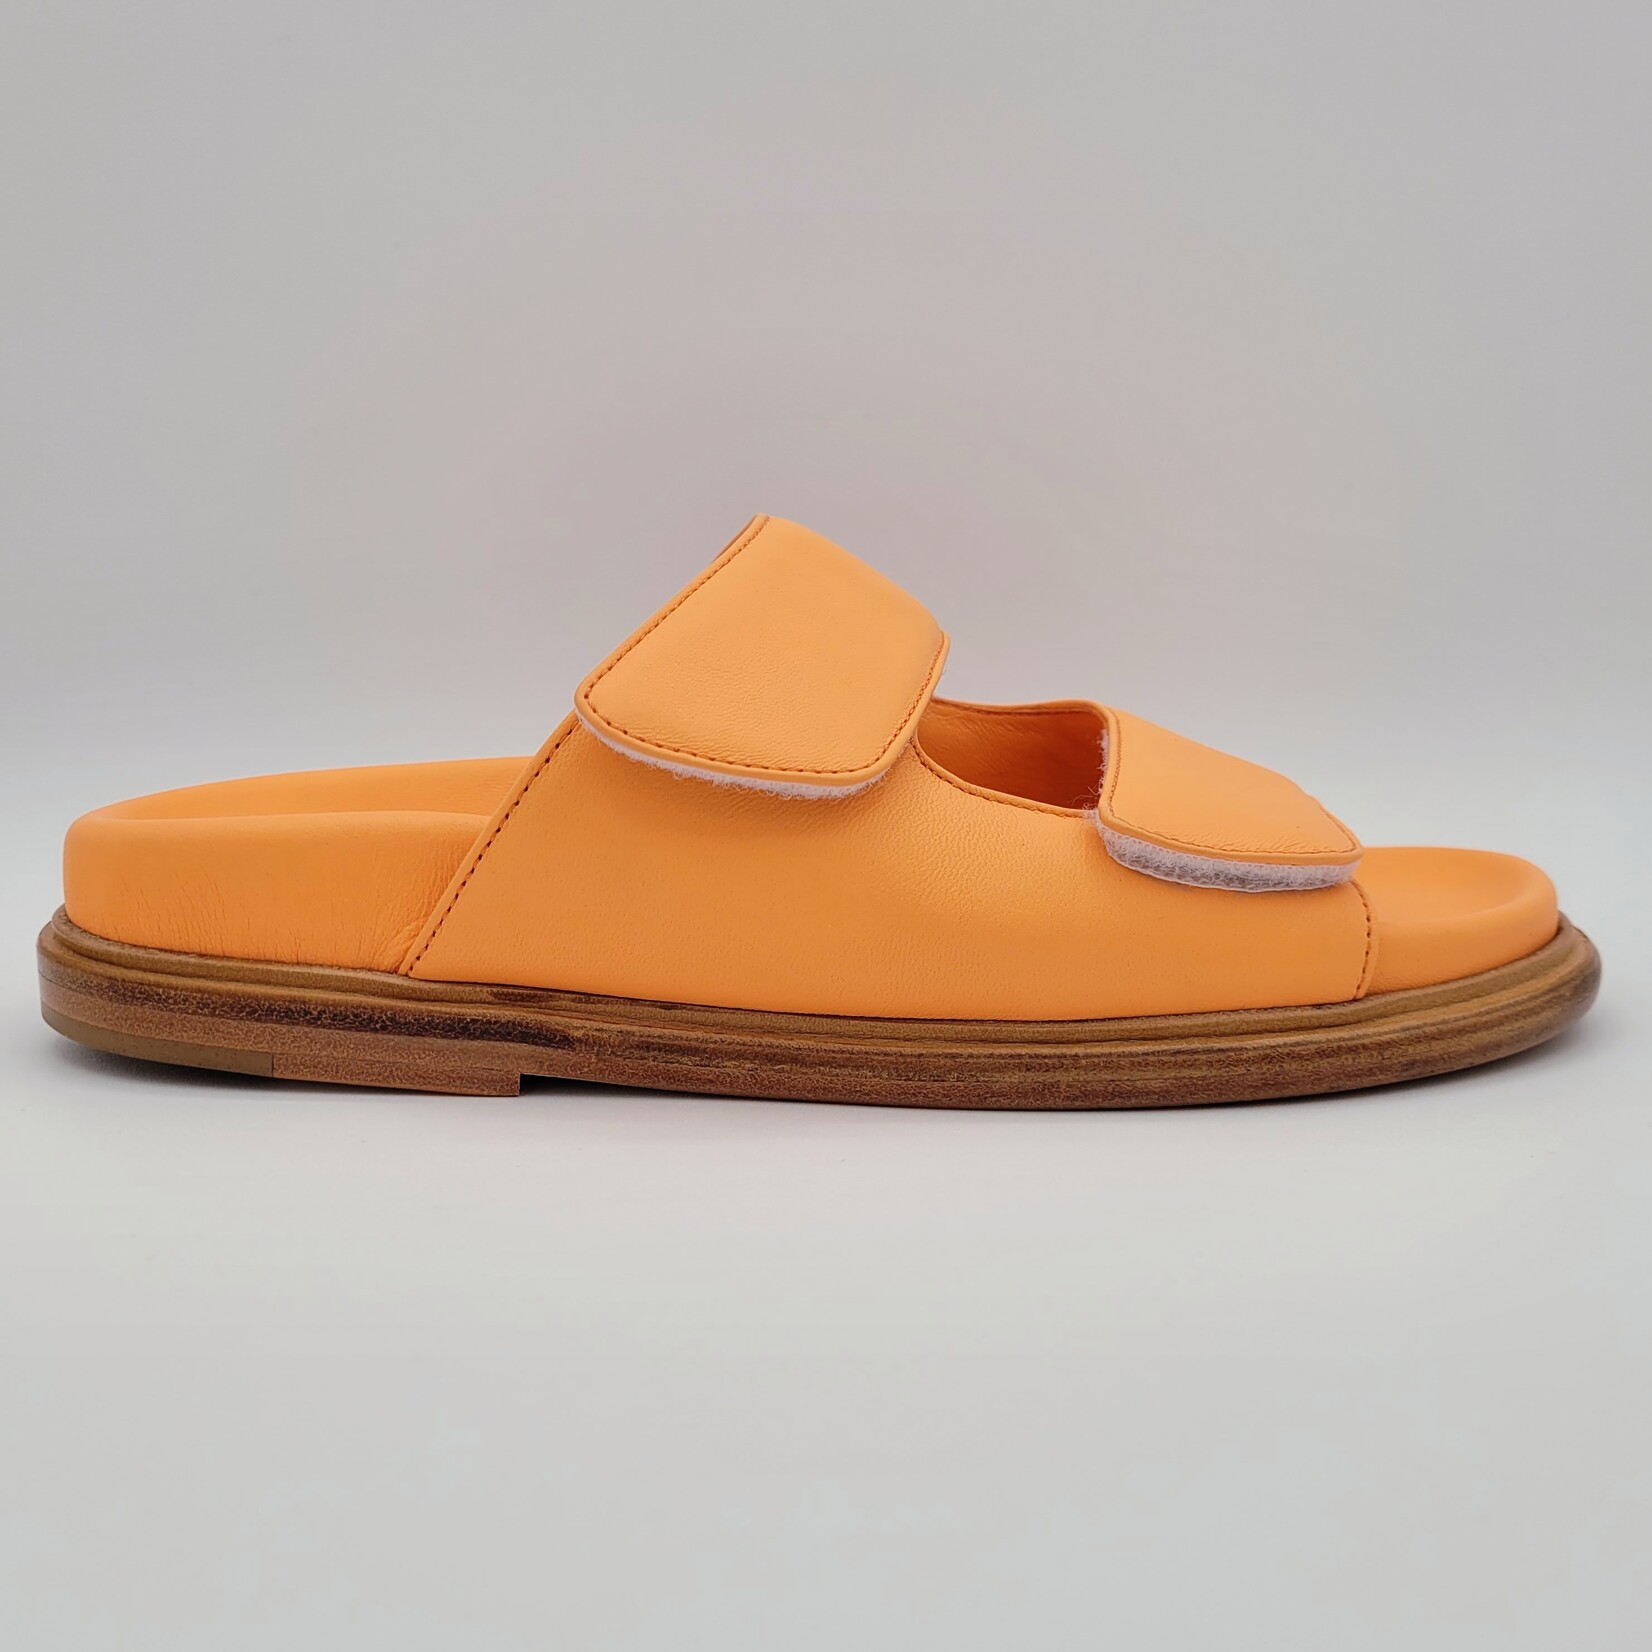 Sturlini Sturlini: Leather Sandal